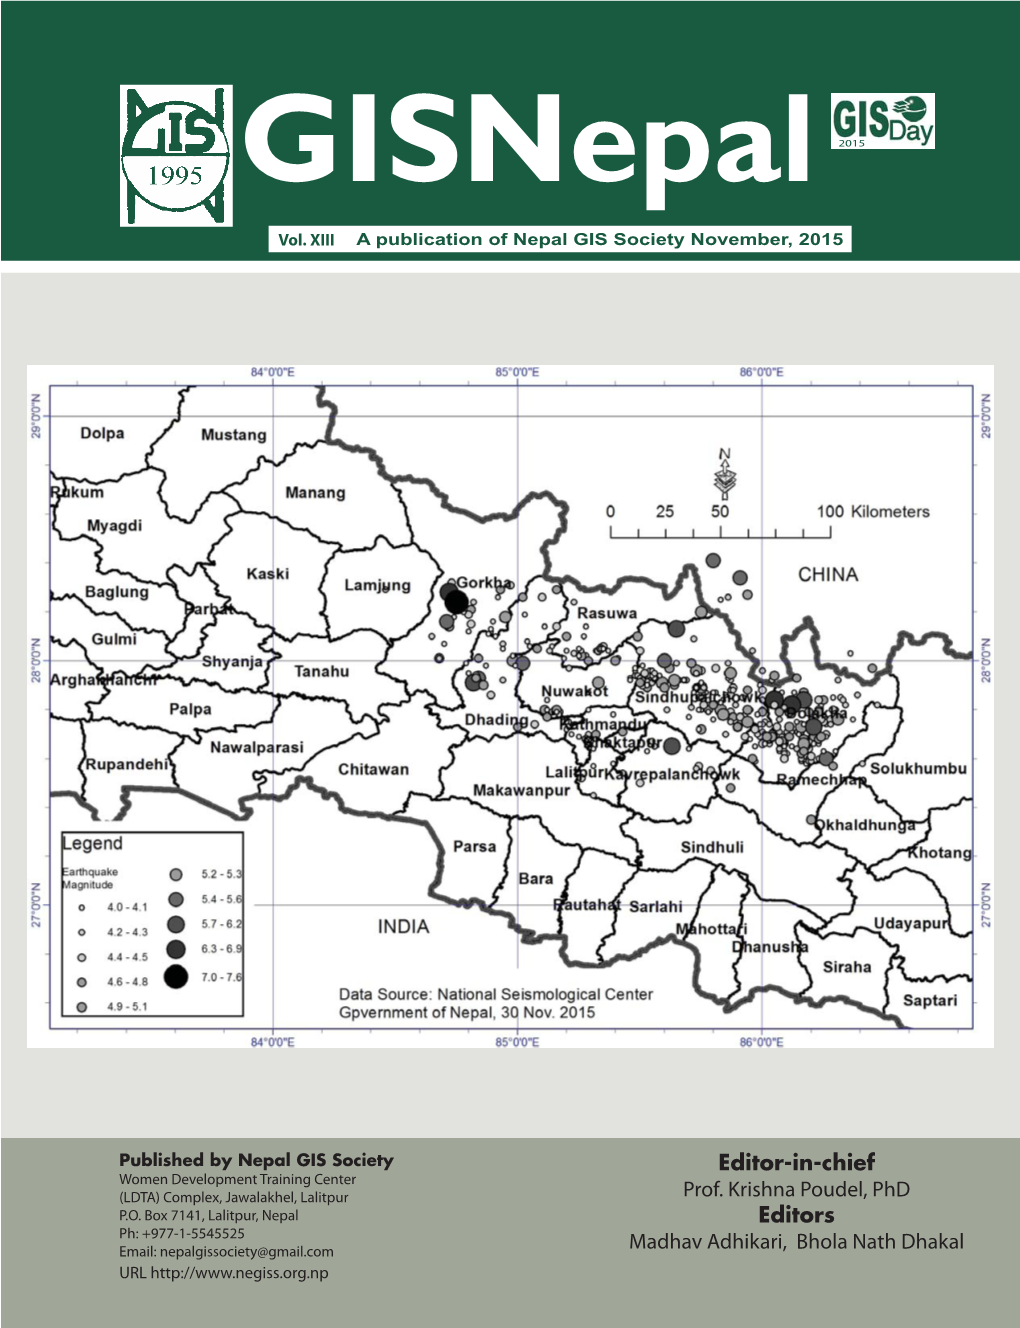 GIS Nepal Newsletter.Indd